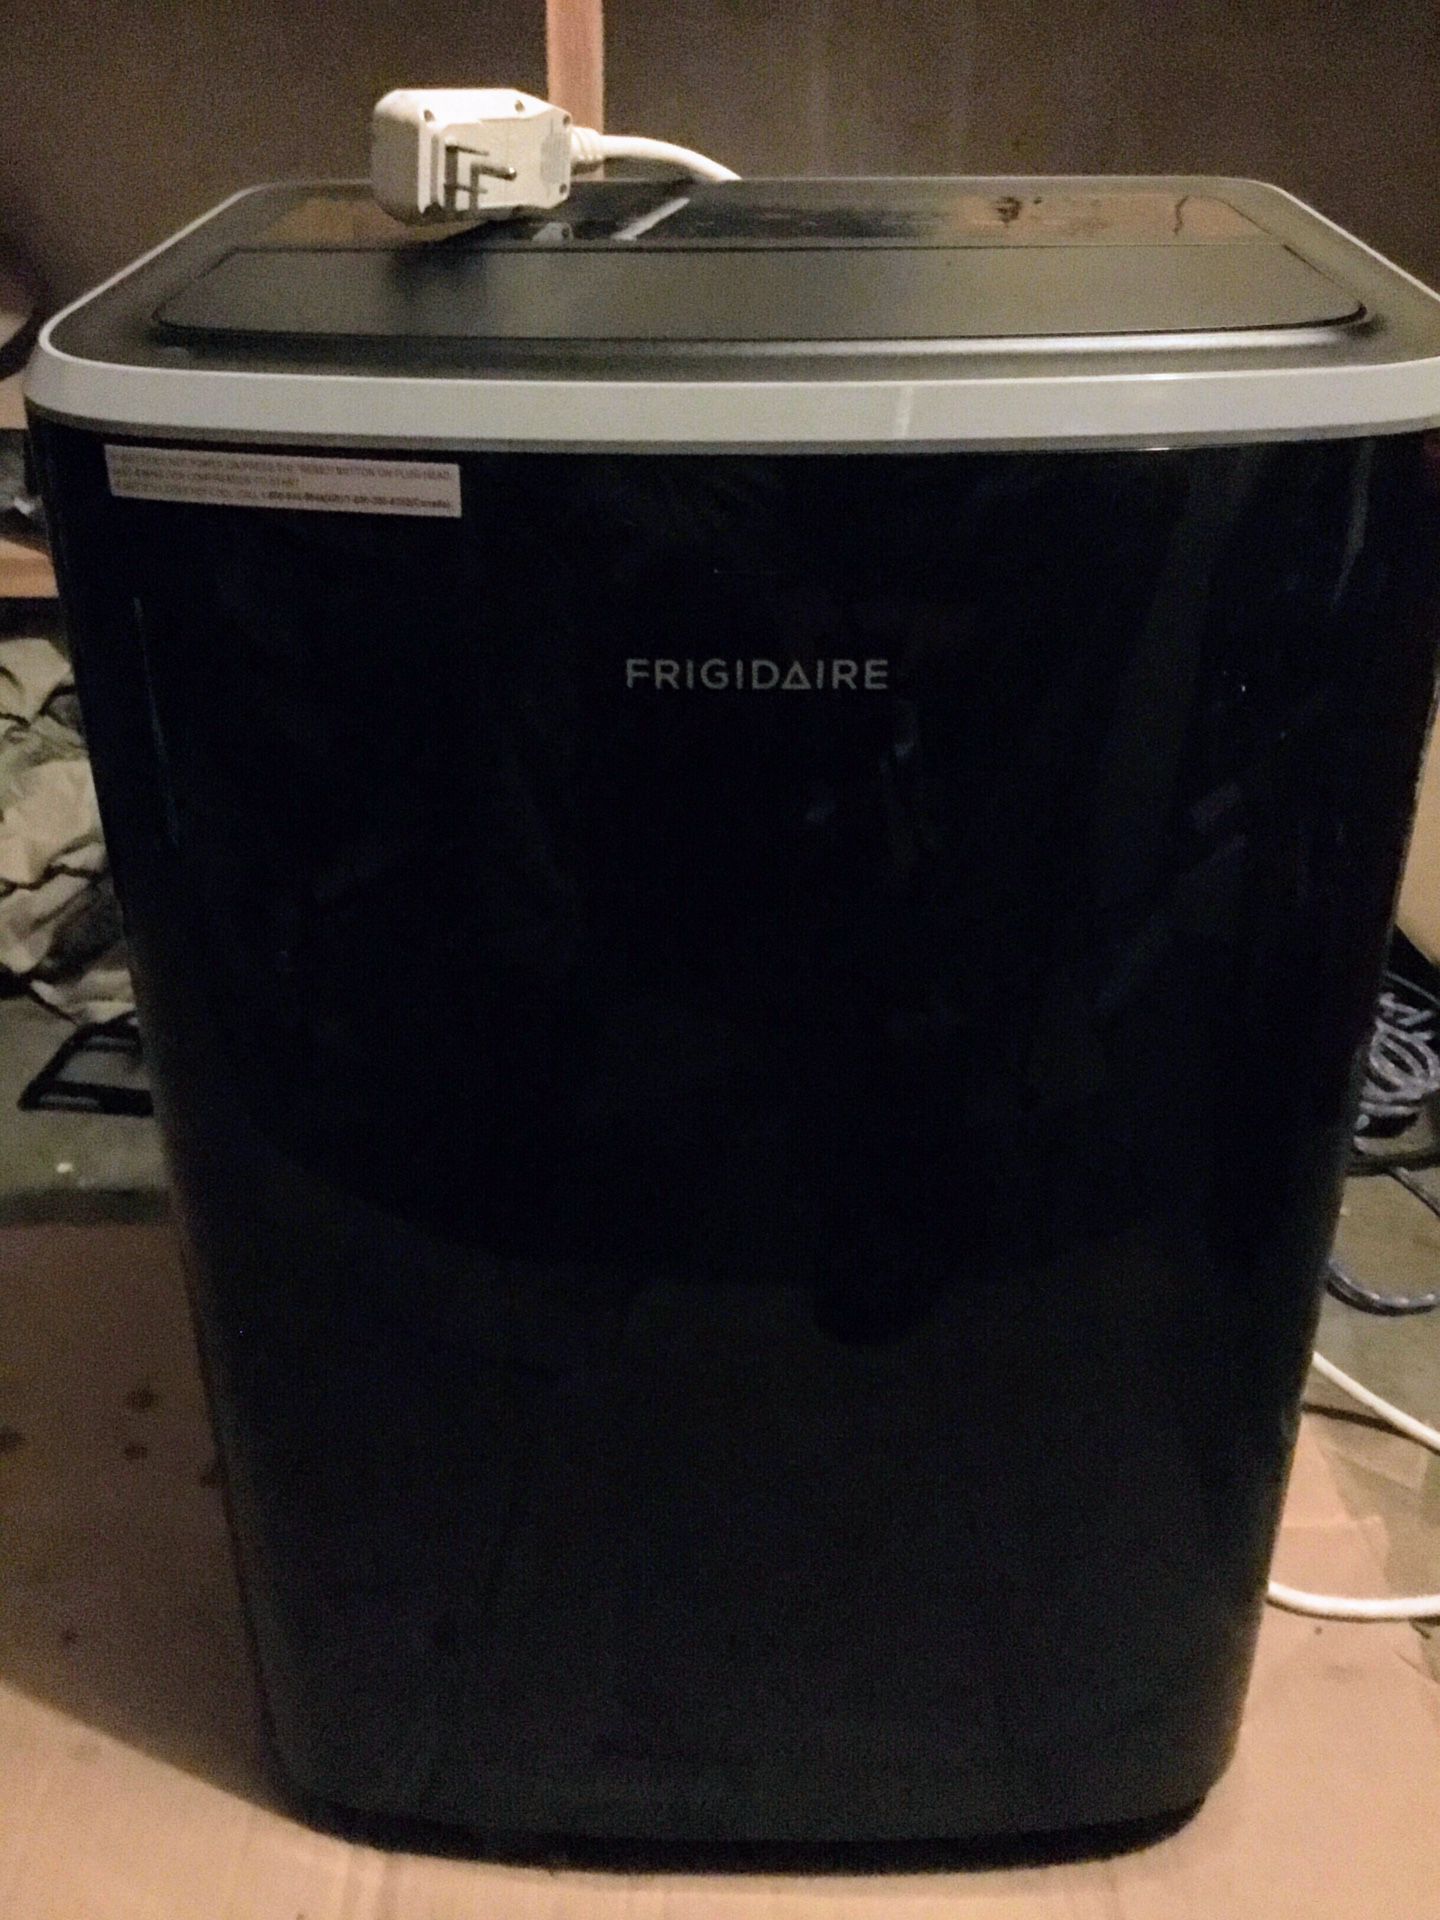 Fridgidaire Portable air Conditioner.